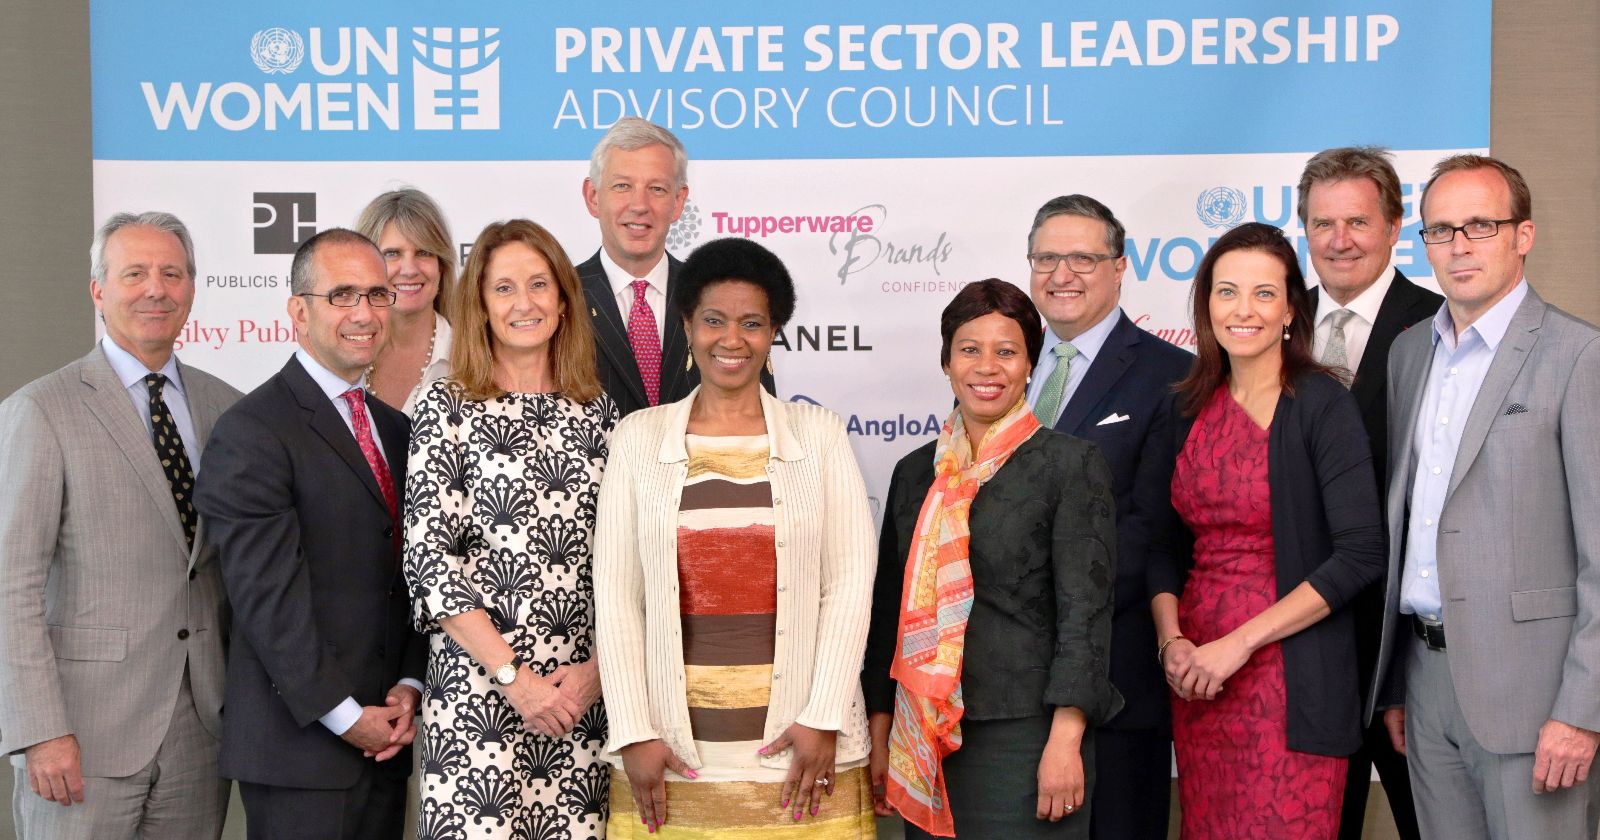 Grupo de personas que conforman Consejo Consultivo de Líderes del Sector Privado de ONU Mujeres